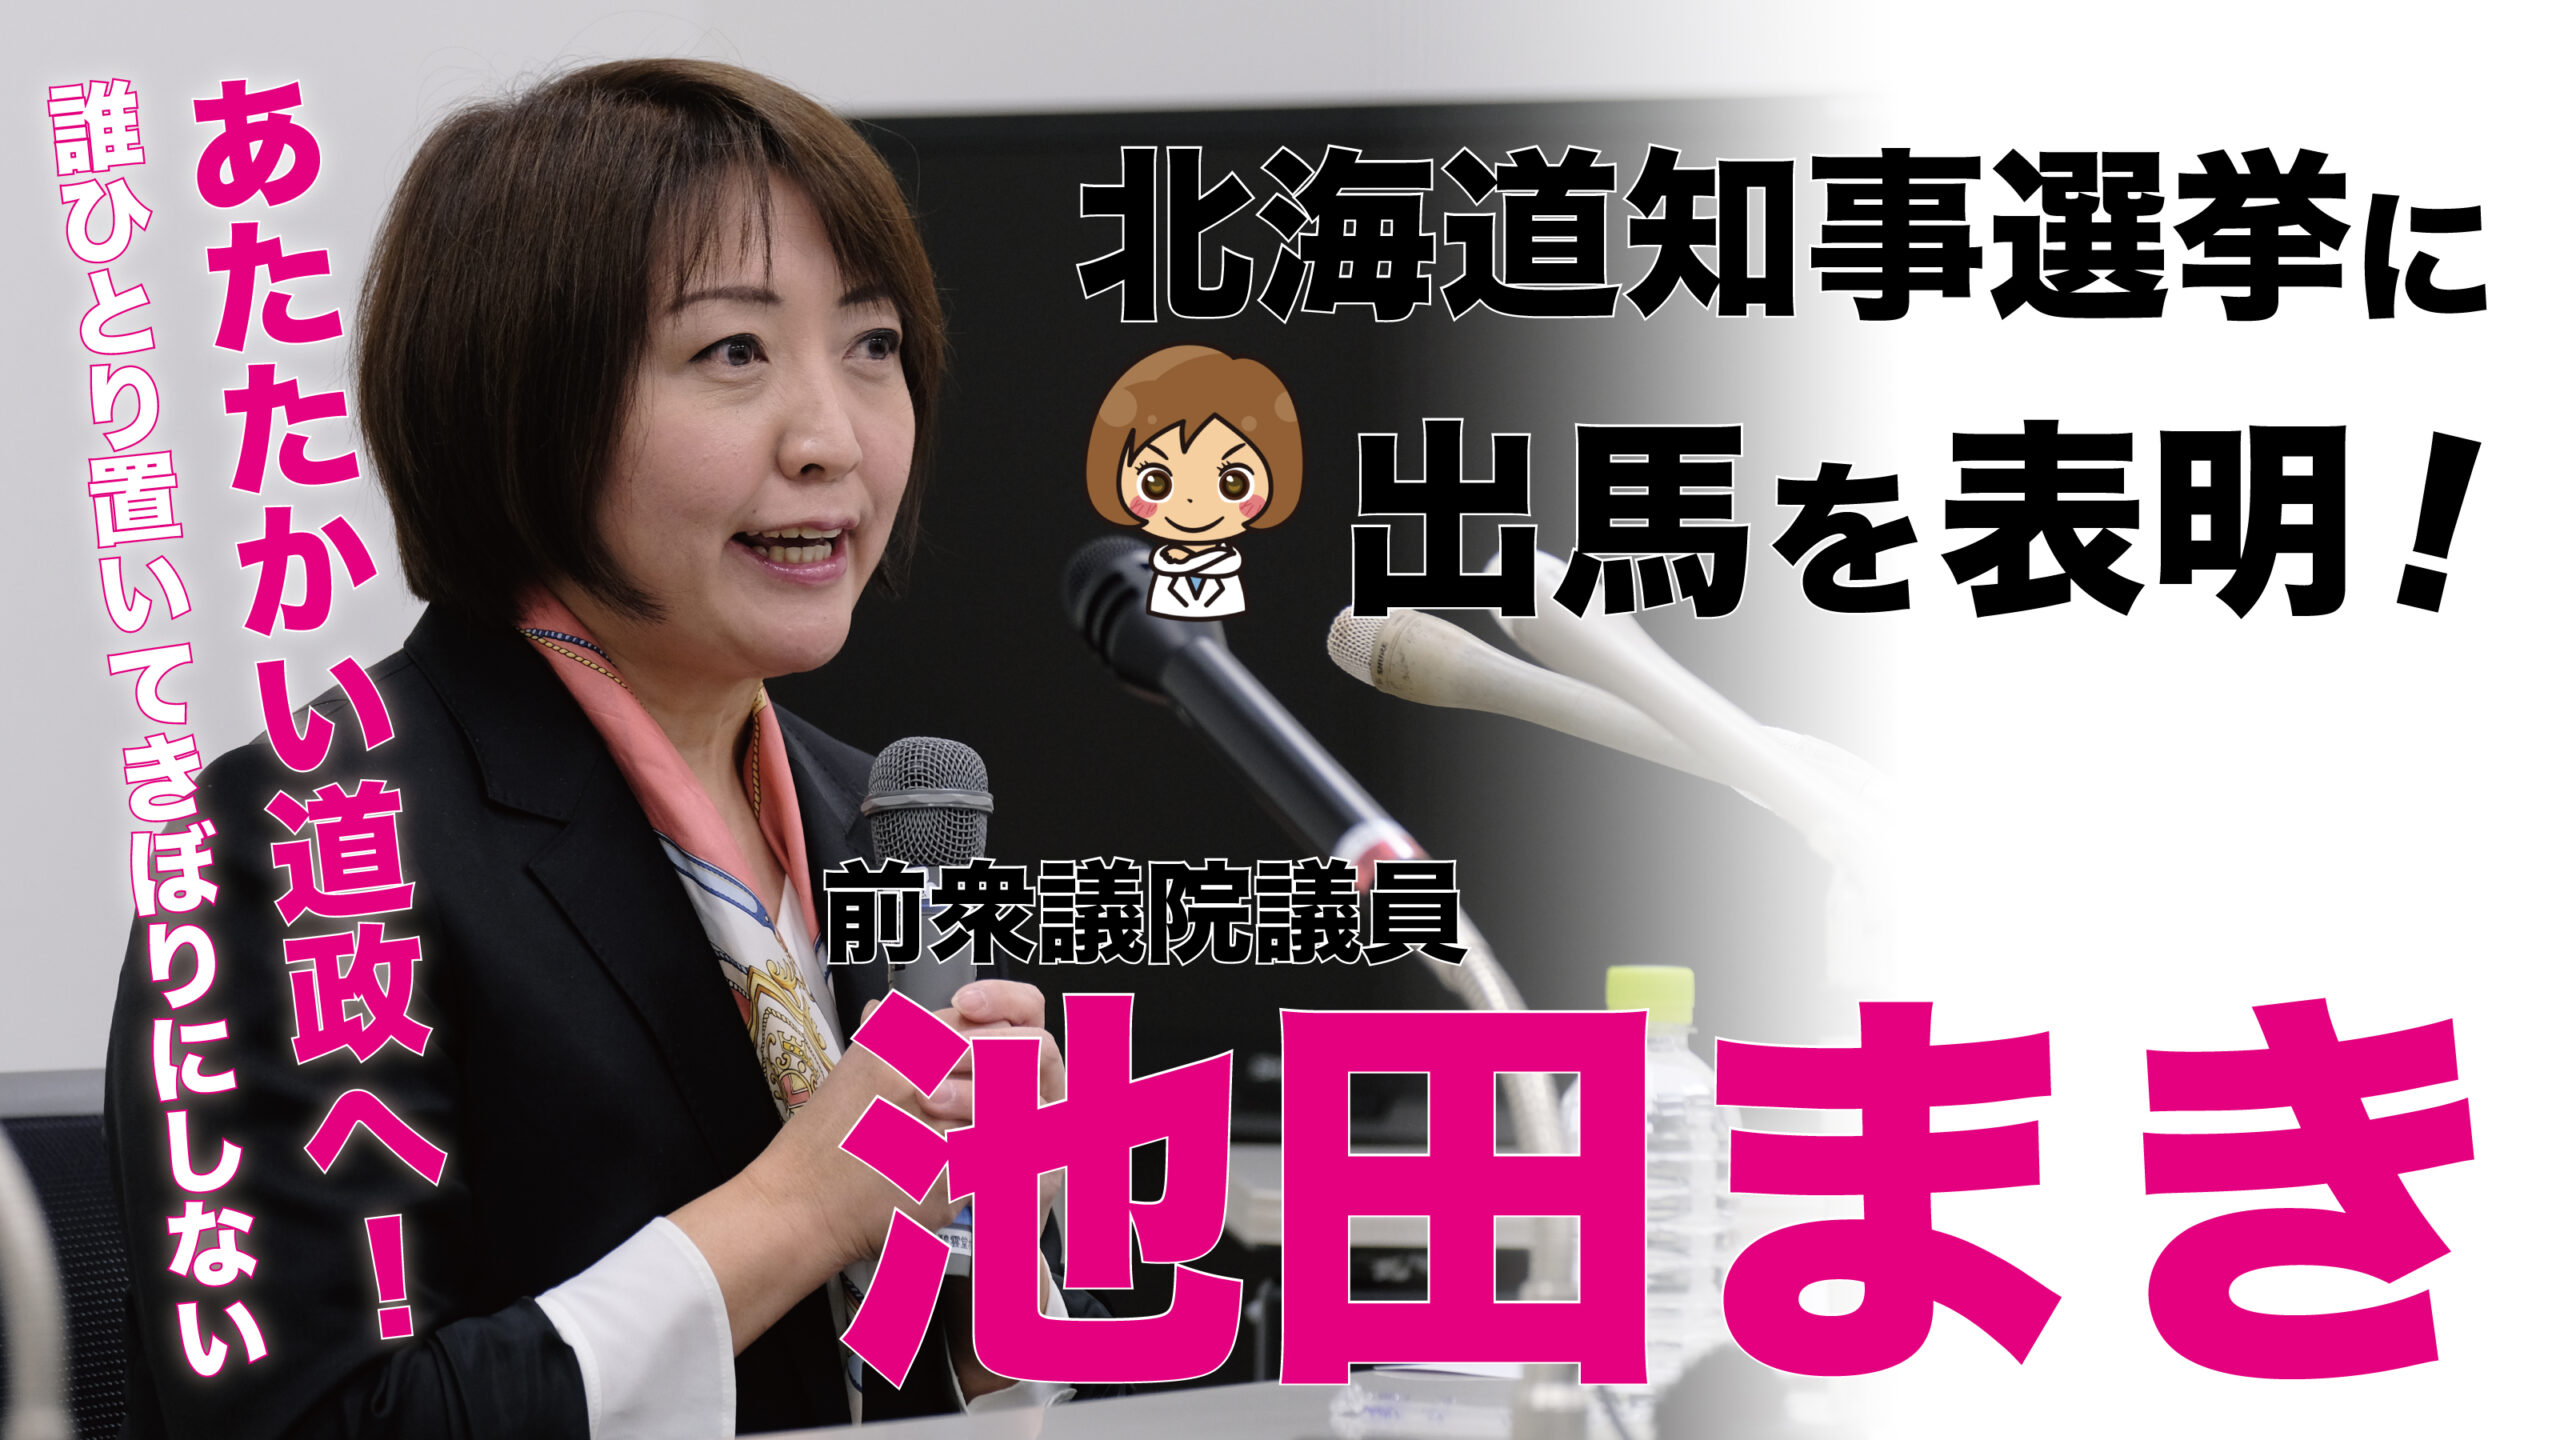 北海道知事選挙への出馬について